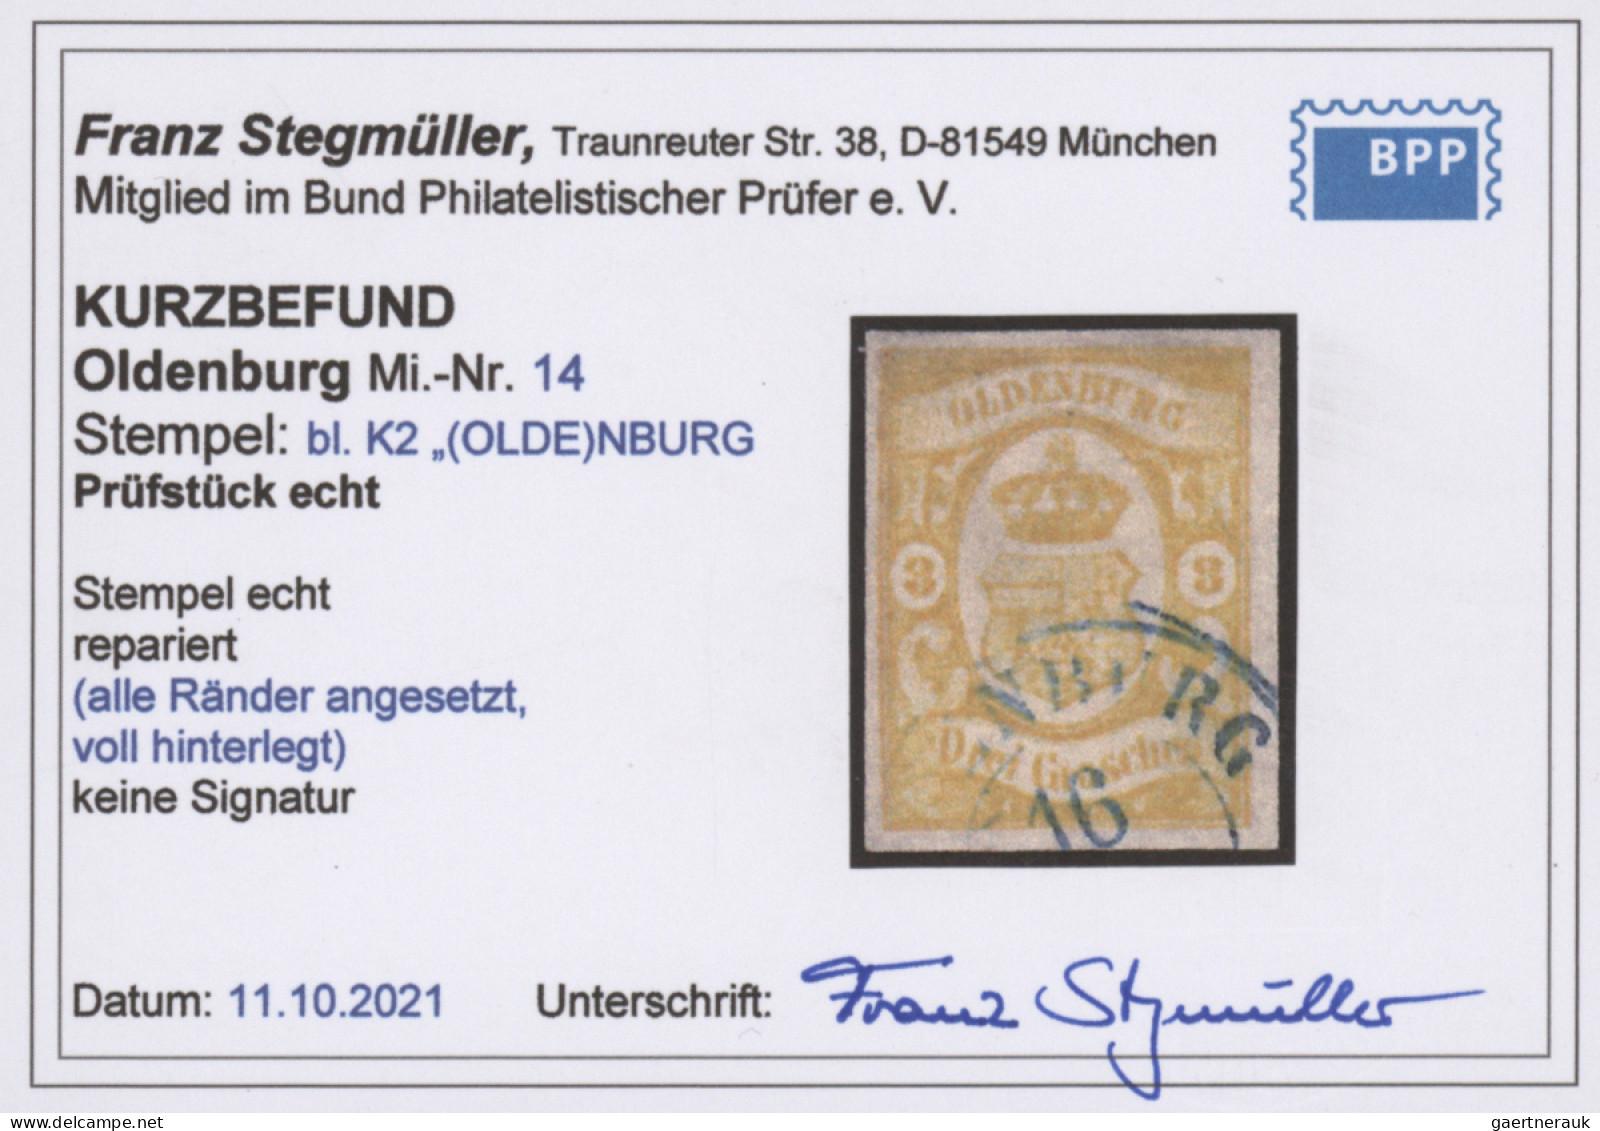 Oldenburg - Marken und Briefe: 1852-1867, umfangreiche Sammlung auf Albenblätter